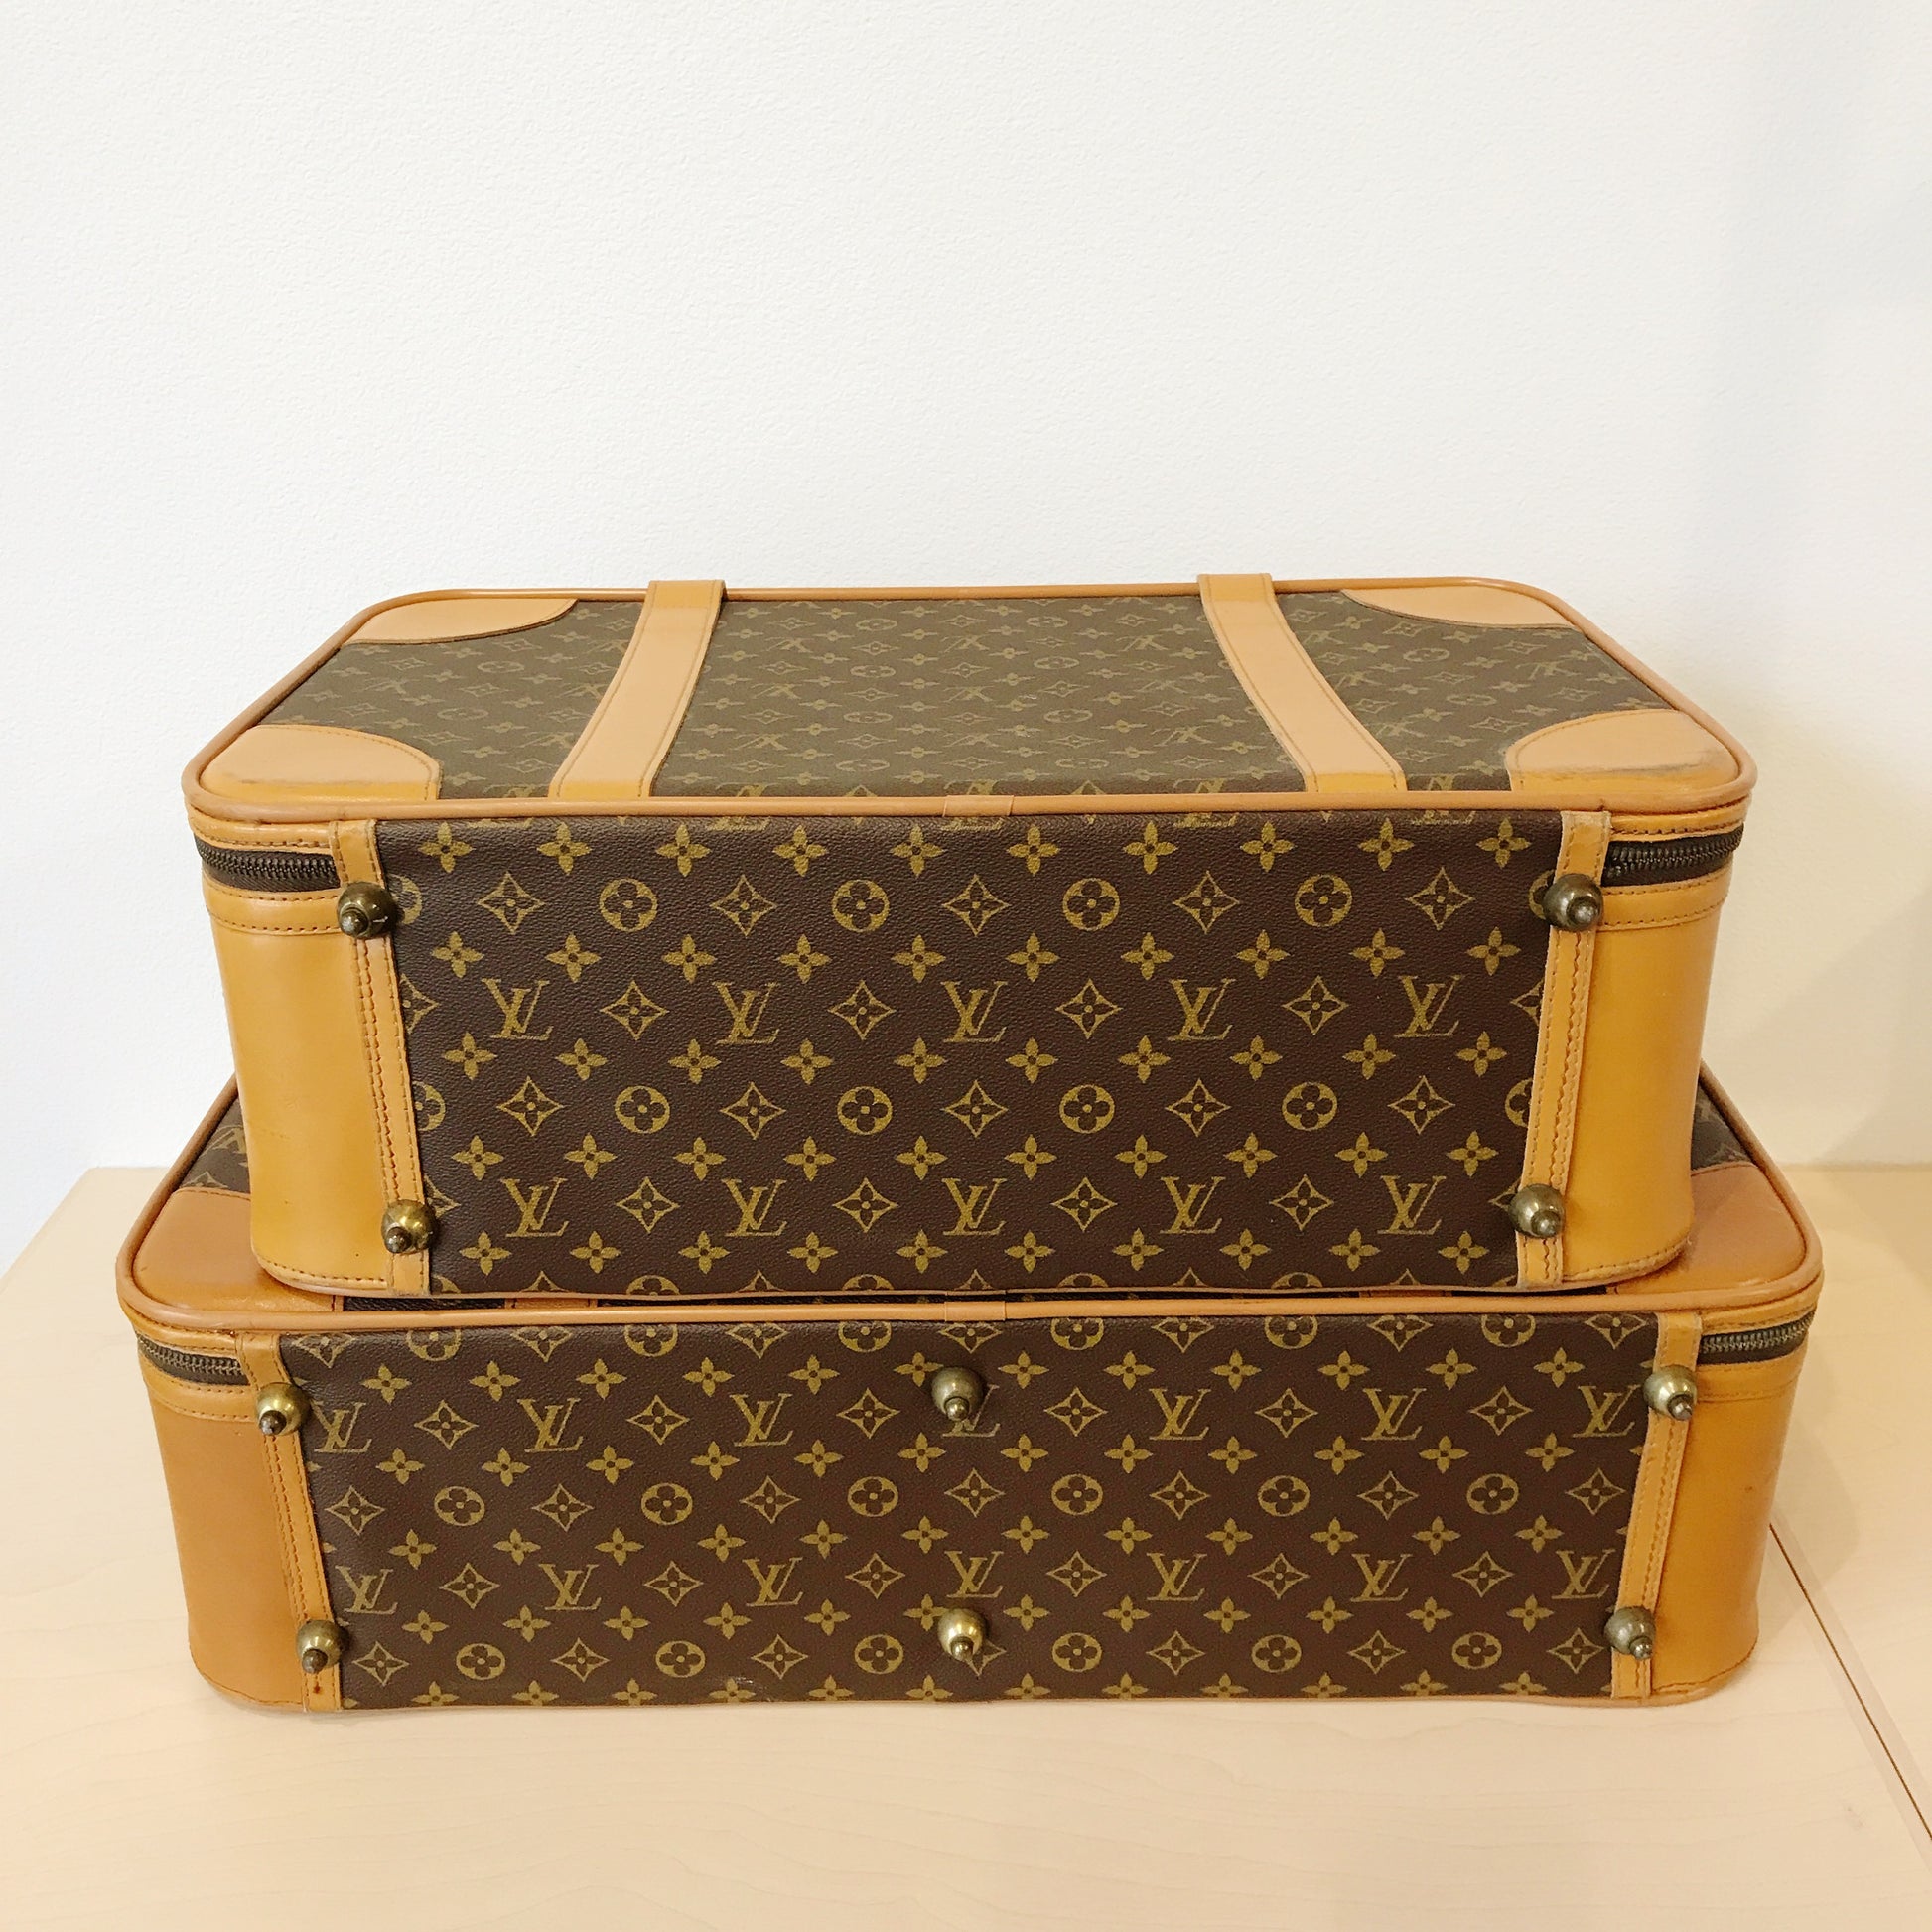 1970's Louis Vuitton Monogram Luggage Set, 59% OFF